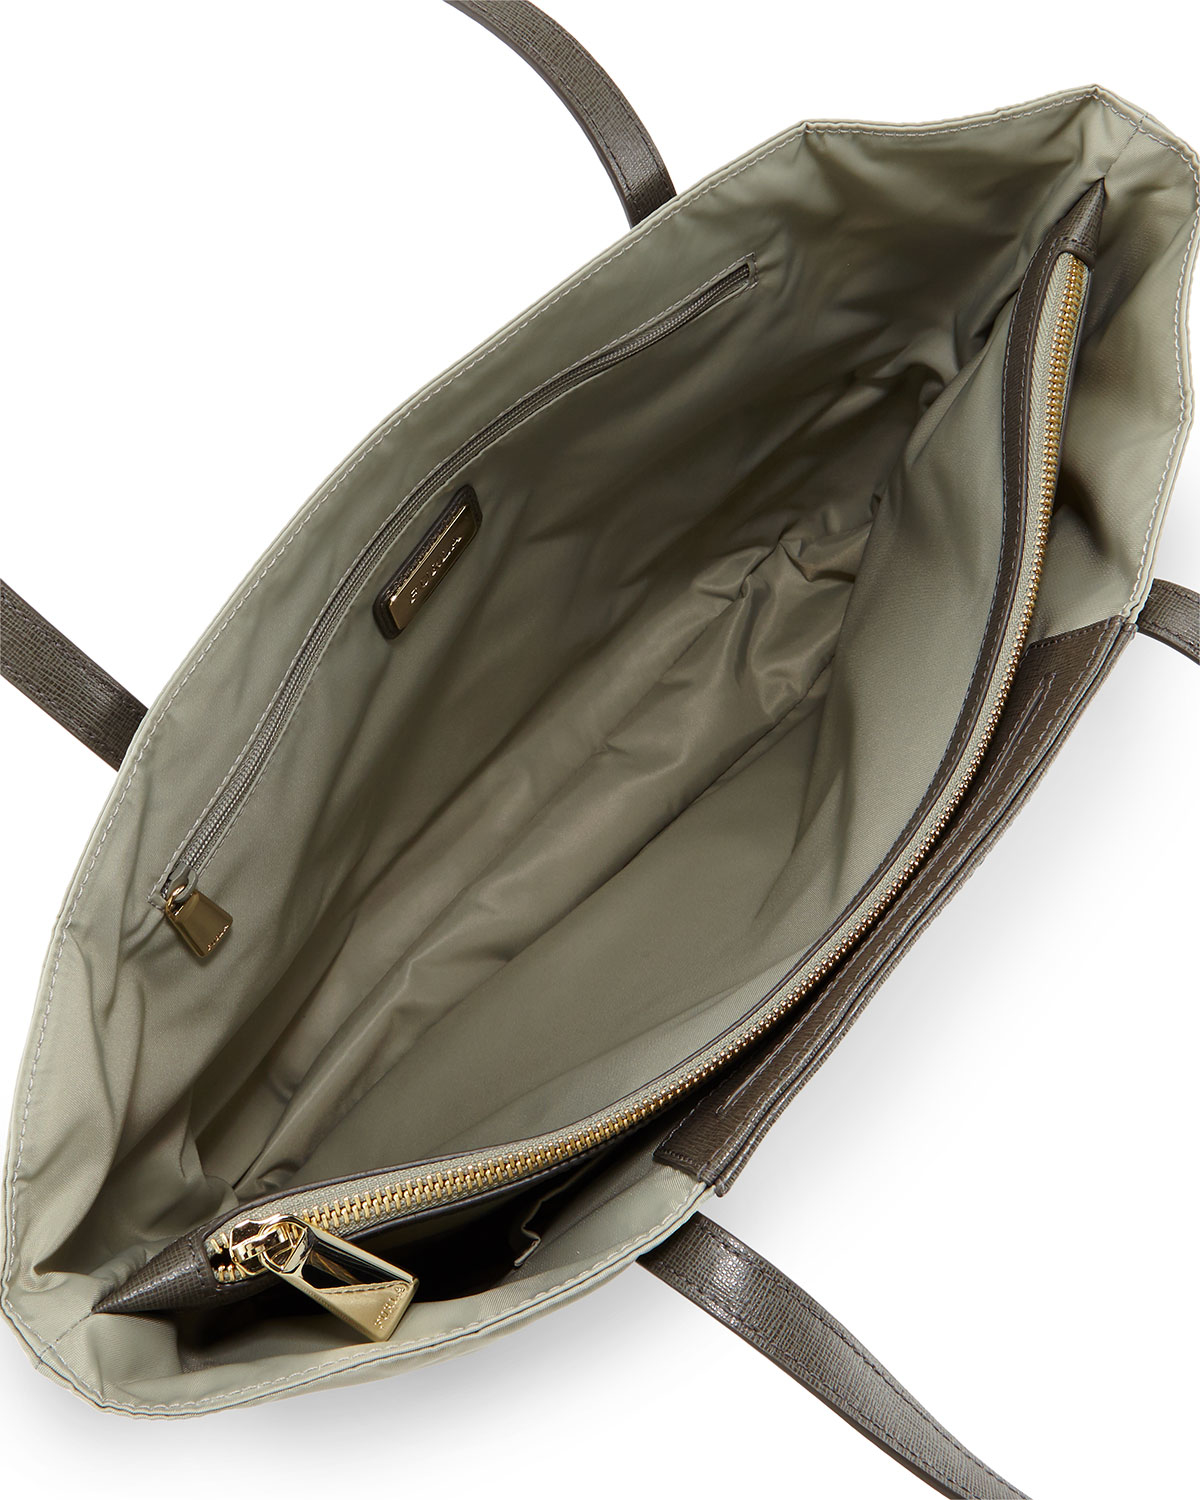 Lyst - Furla Calypso Medium Colorblock Tote Bag in Brown